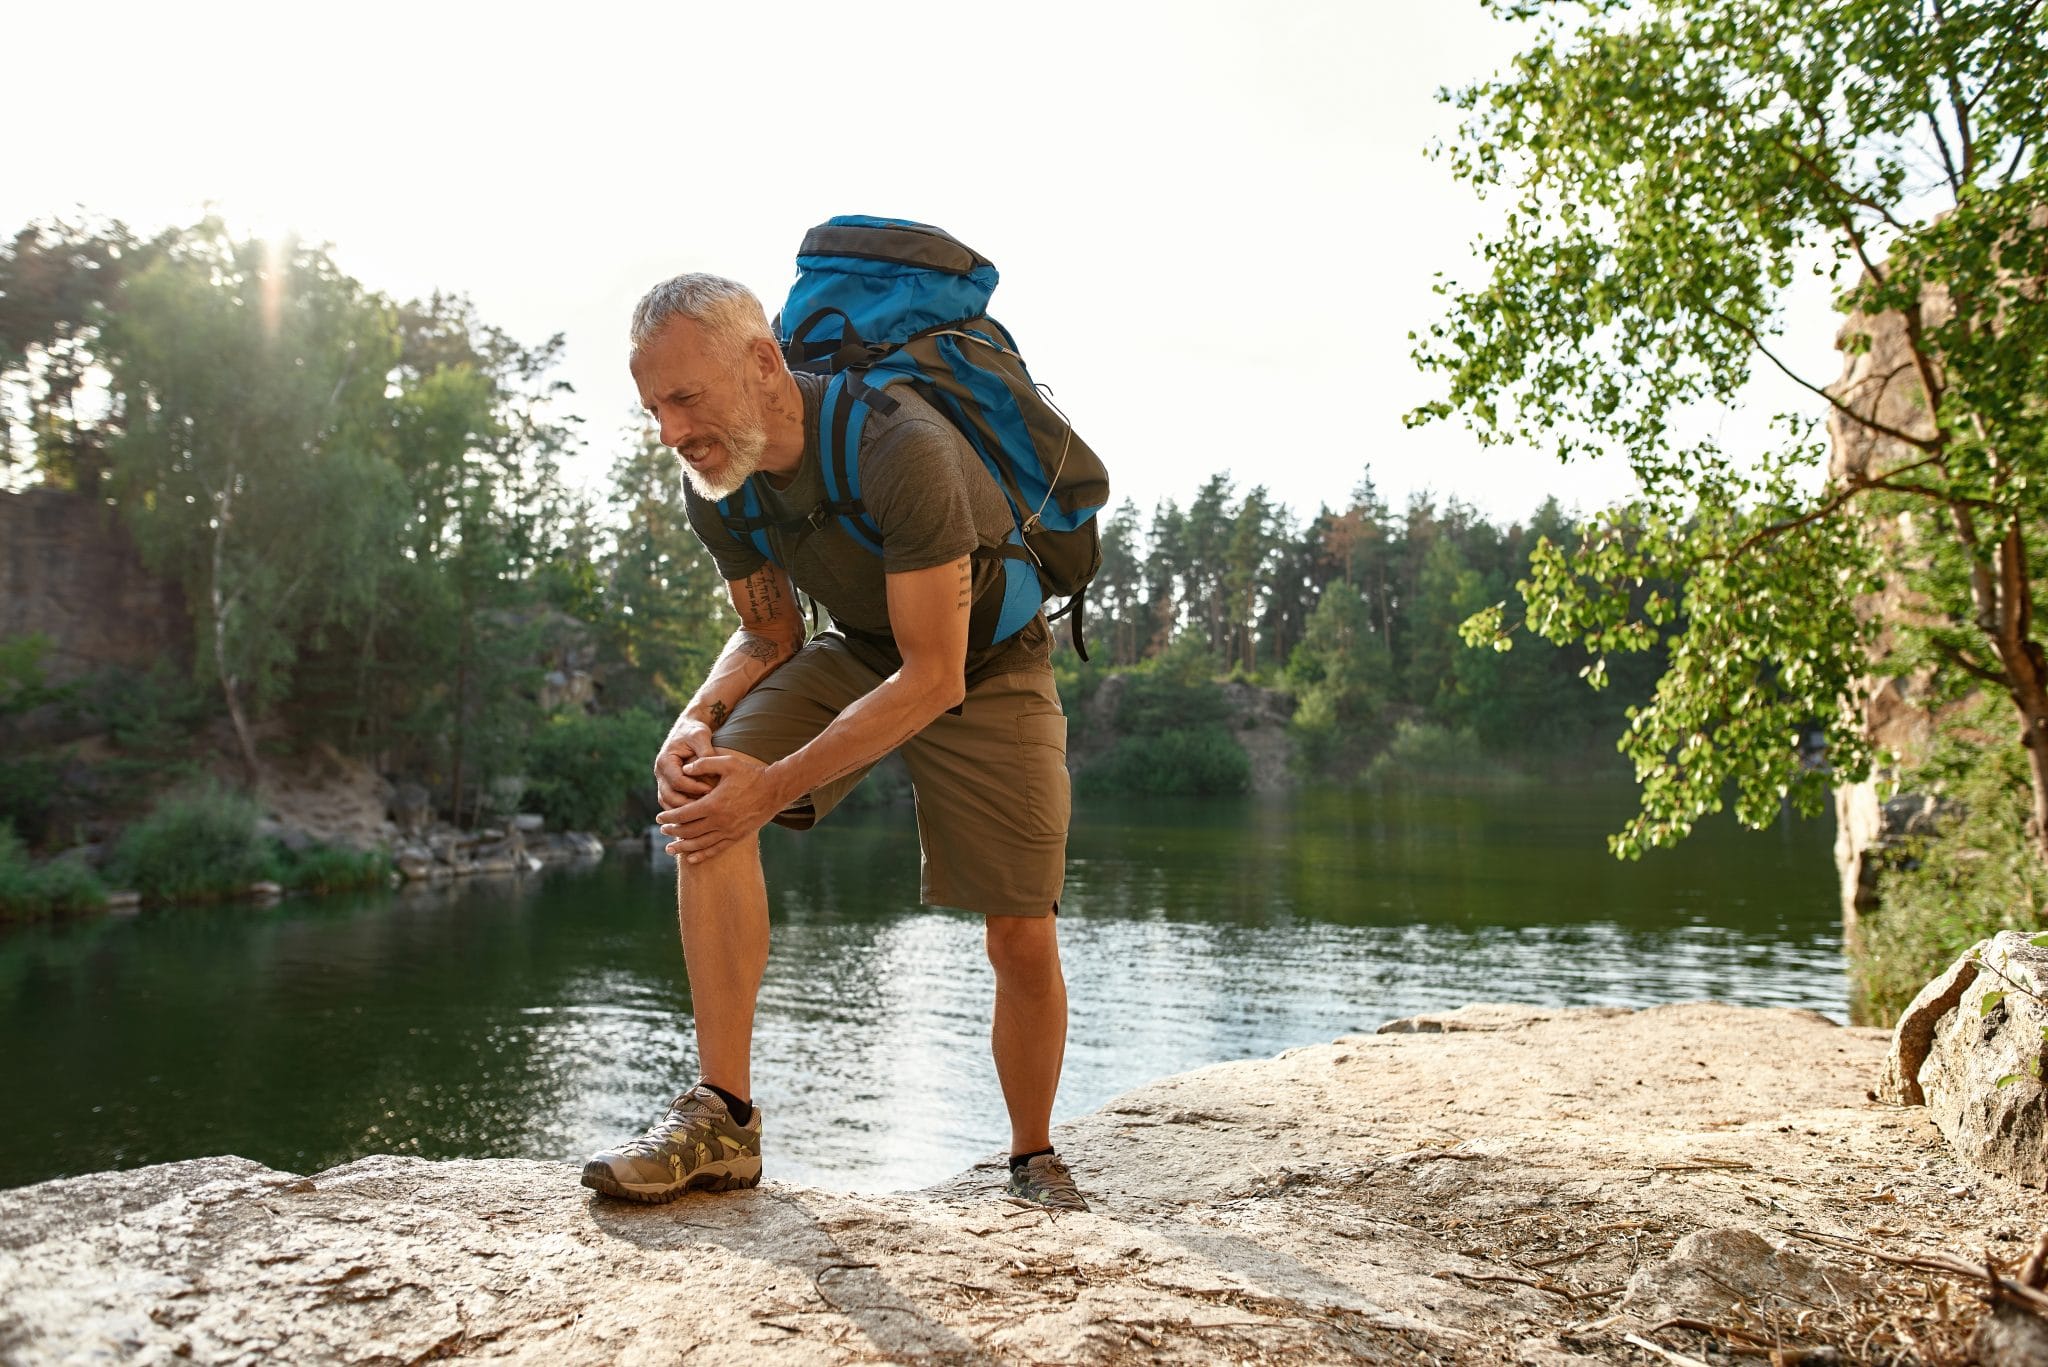 Comment éviter les douleurs aux genoux durant une randonnée ?